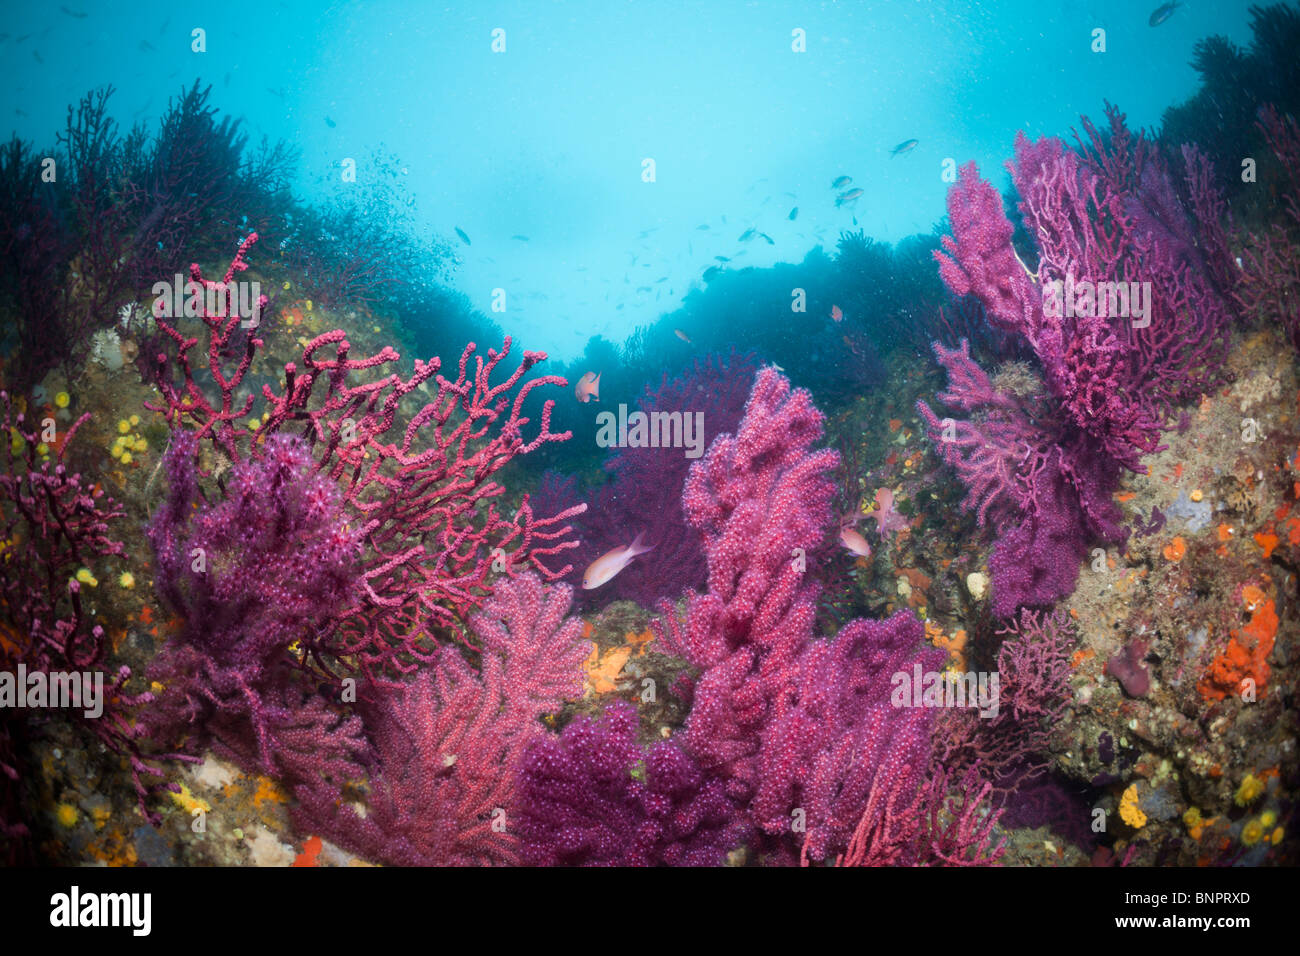 Reef with variable Gorgonians, Paramuricea clavata, Cap de Creus, Costa Brava, Spain Stock Photo